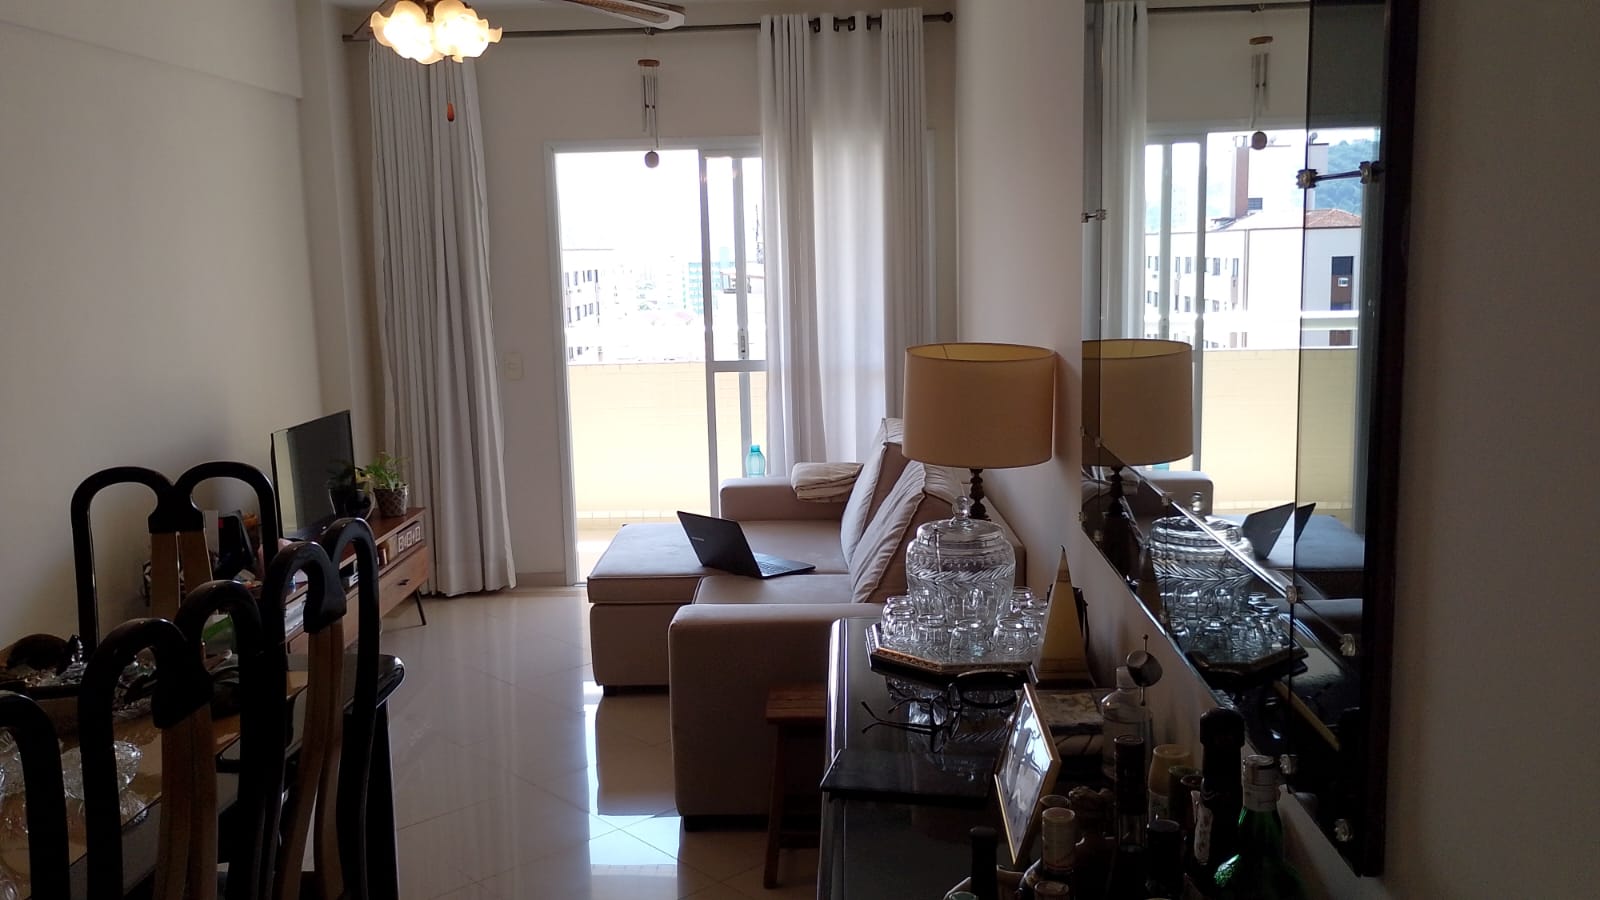 Apartamento Boqueirao 2 dormitorios 1 suite -Sala 2 ambientes com varanda – 2 garagens e lazer - foto 23